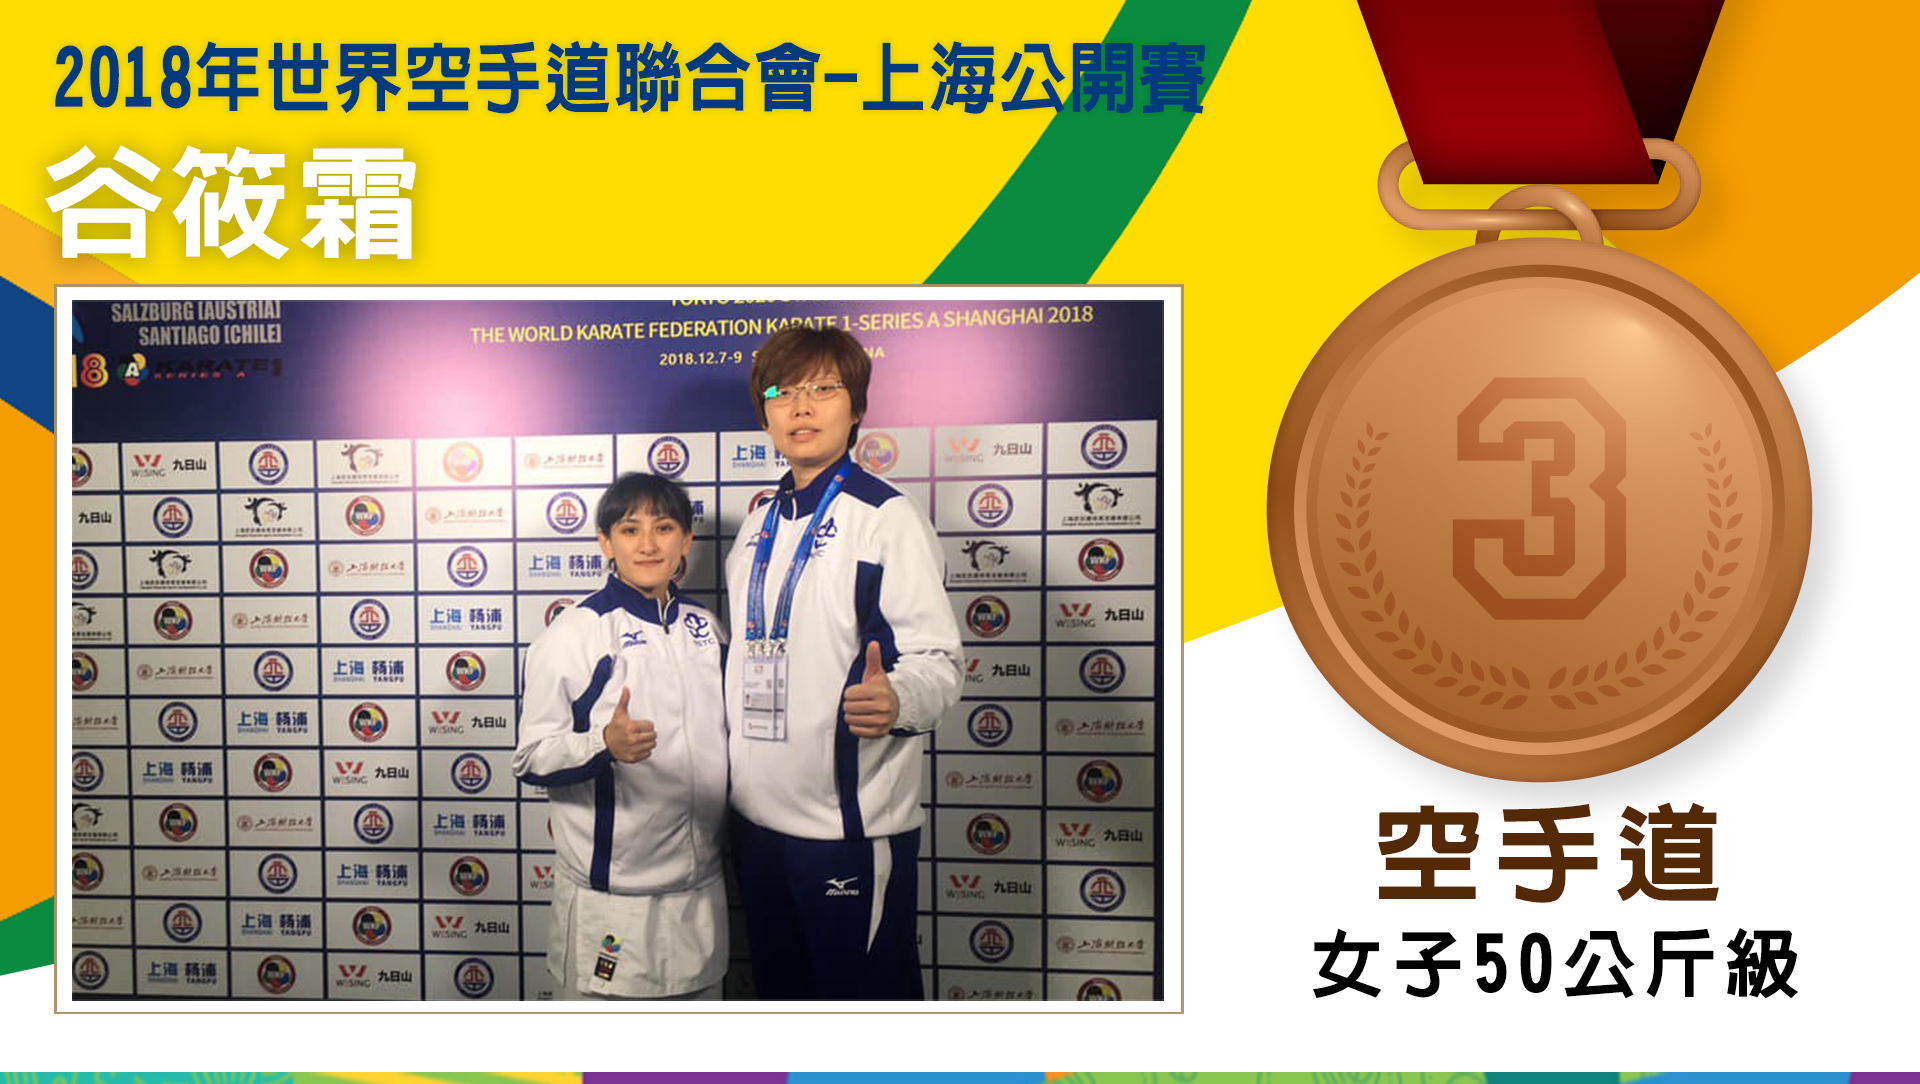 2018年世界空手道聯合會-上海公開賽 谷筱霜 - 銅牌 (女子50公斤級銅牌)